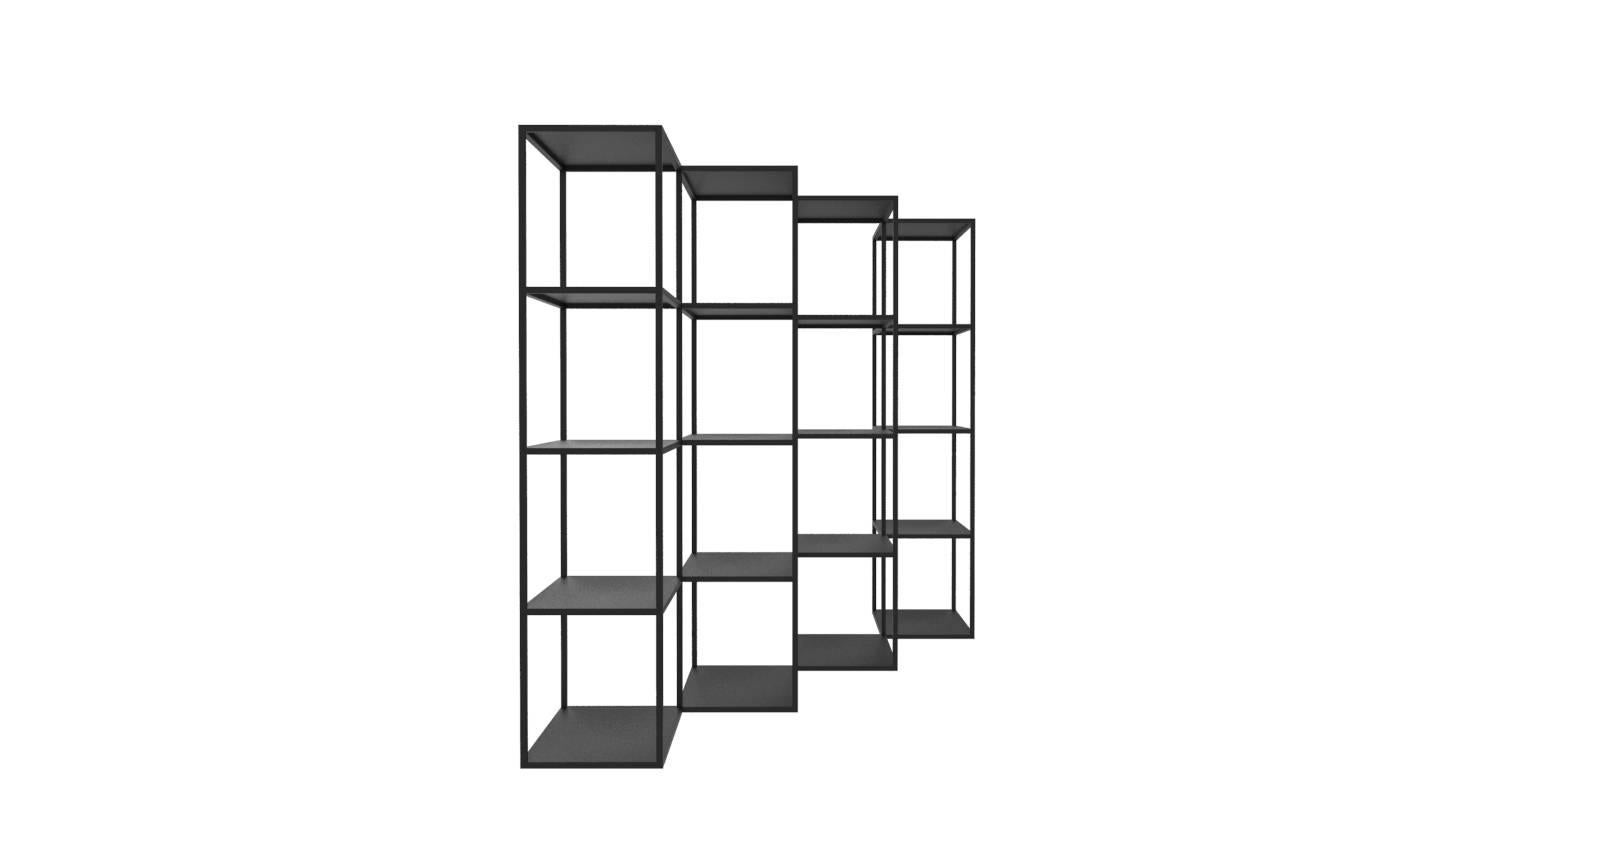 Conçu comme une bibliothèque minimale et contemporaine pour rompre le plan du mur, ce système modulaire est polyvalent en tant que séparateur de pièce moderne ainsi que comme toile de fond dans n'importe quel espace, qu'il s'agisse d'une résidence